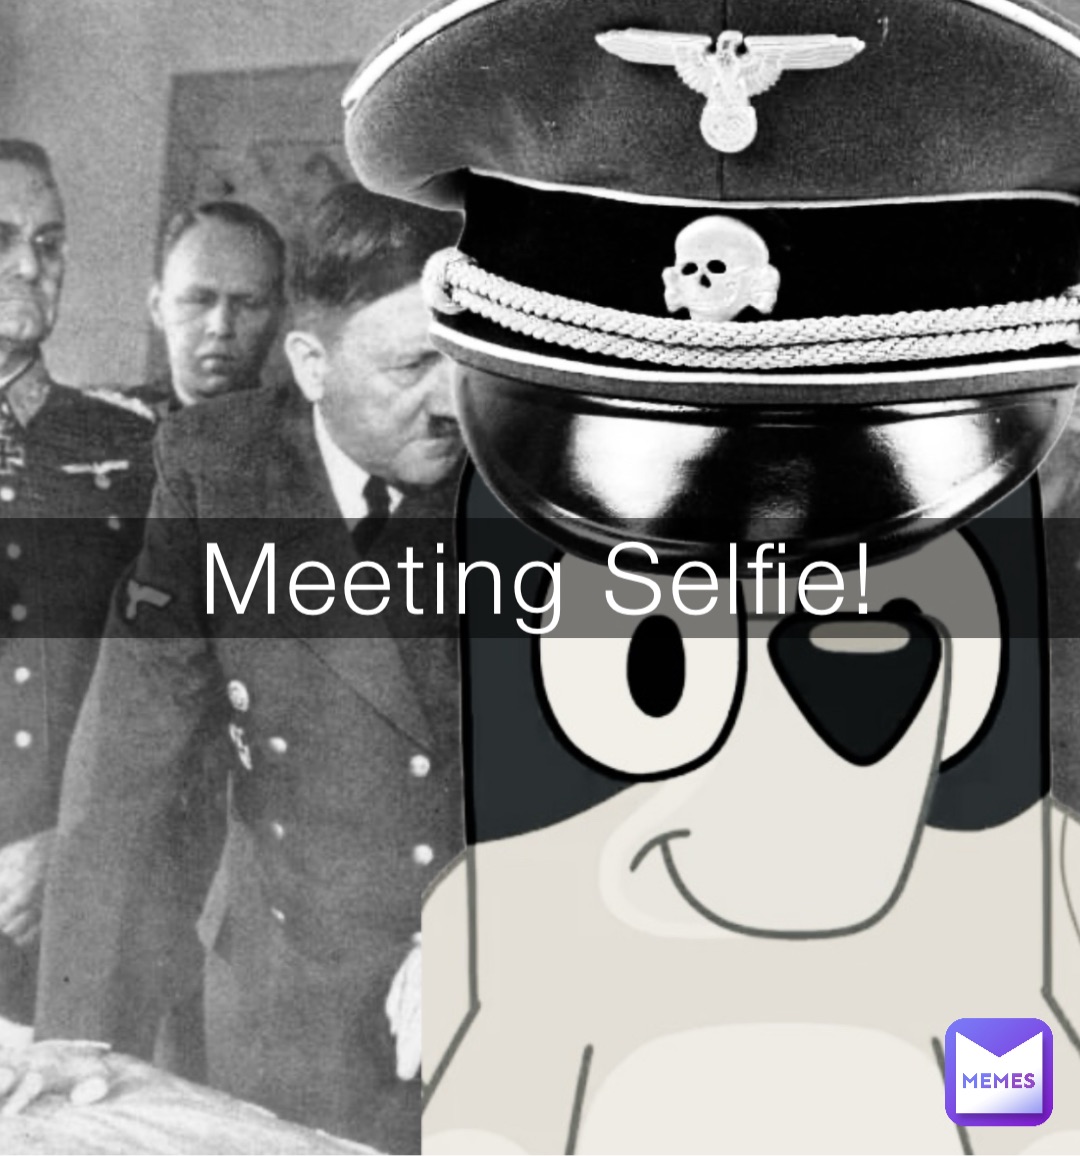 Meeting Selfie!